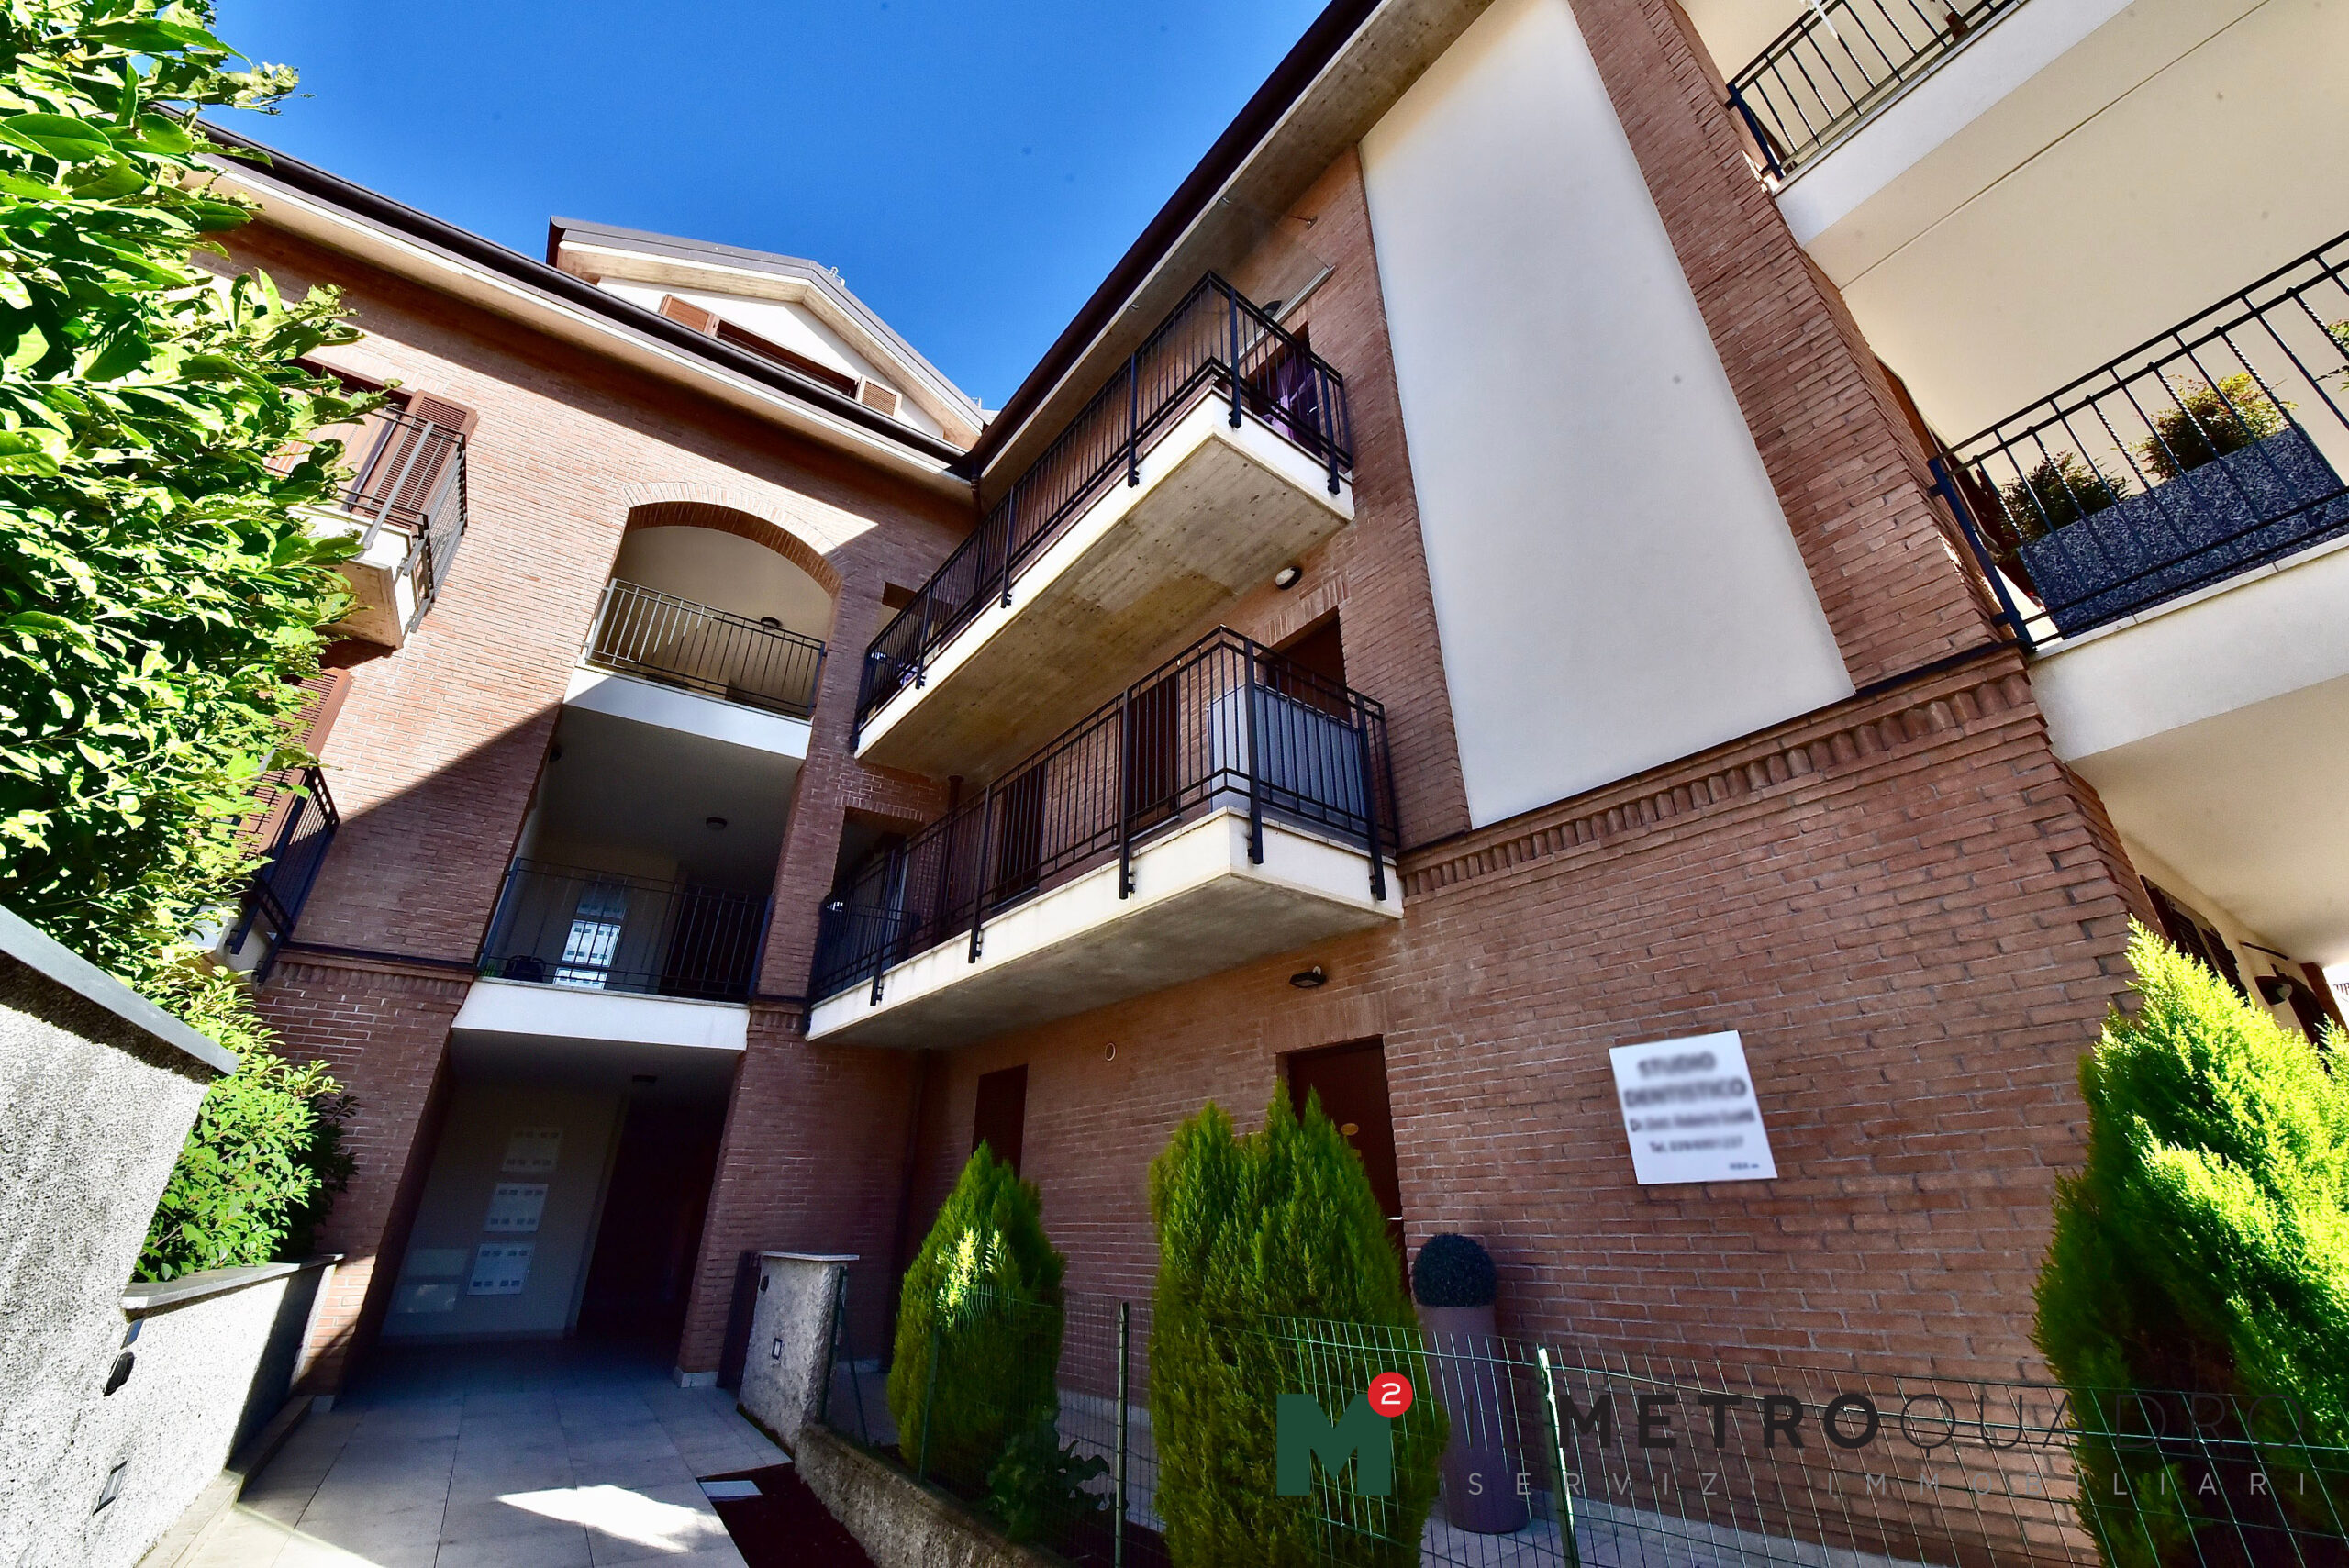 Bernareggio – Ampio appartamento di recente costruzione